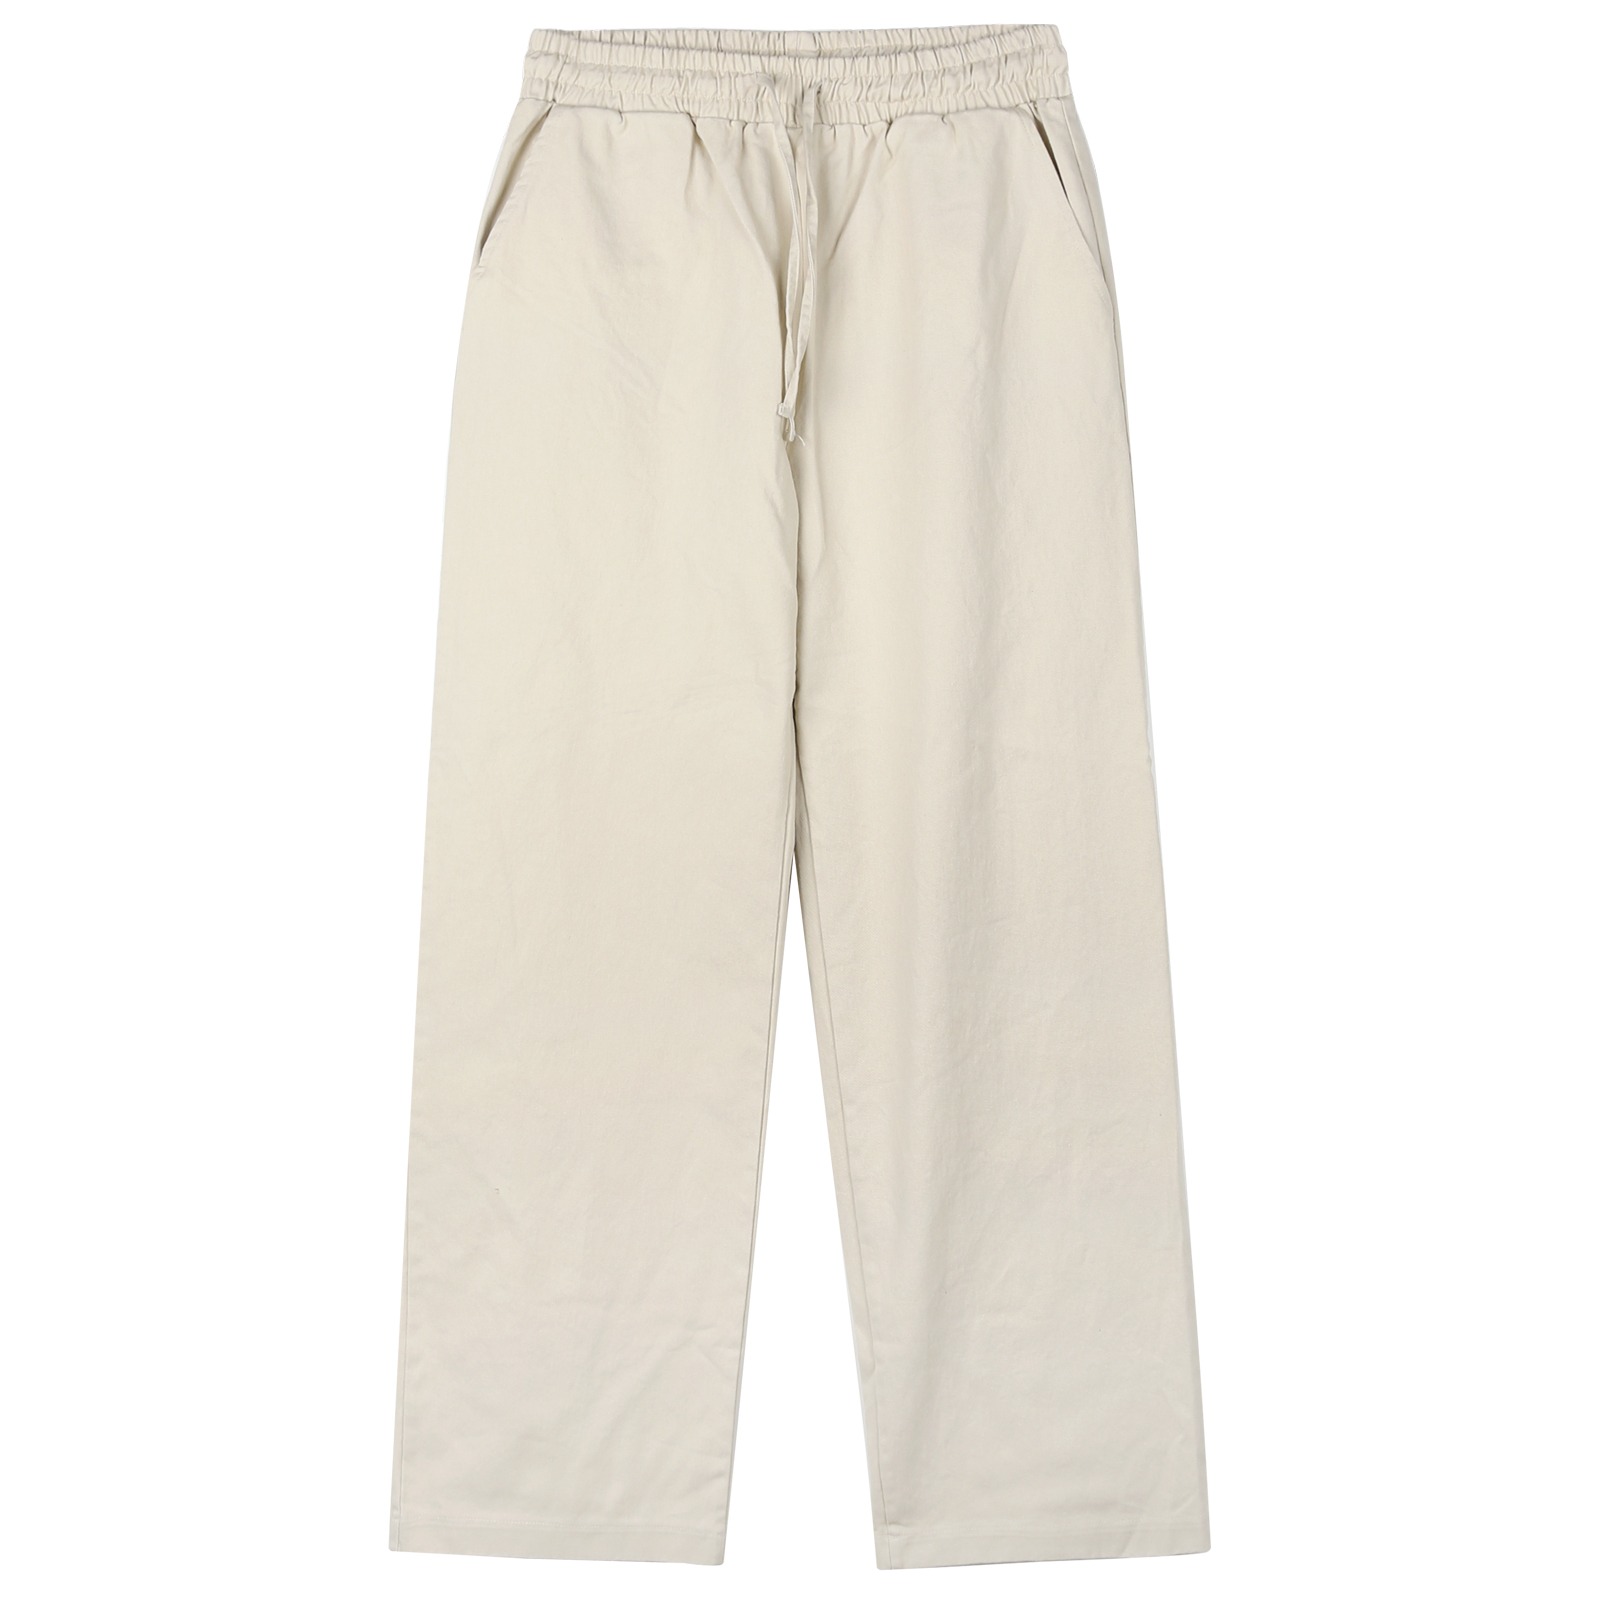 V149 wide cotton bandding pants (light beige)